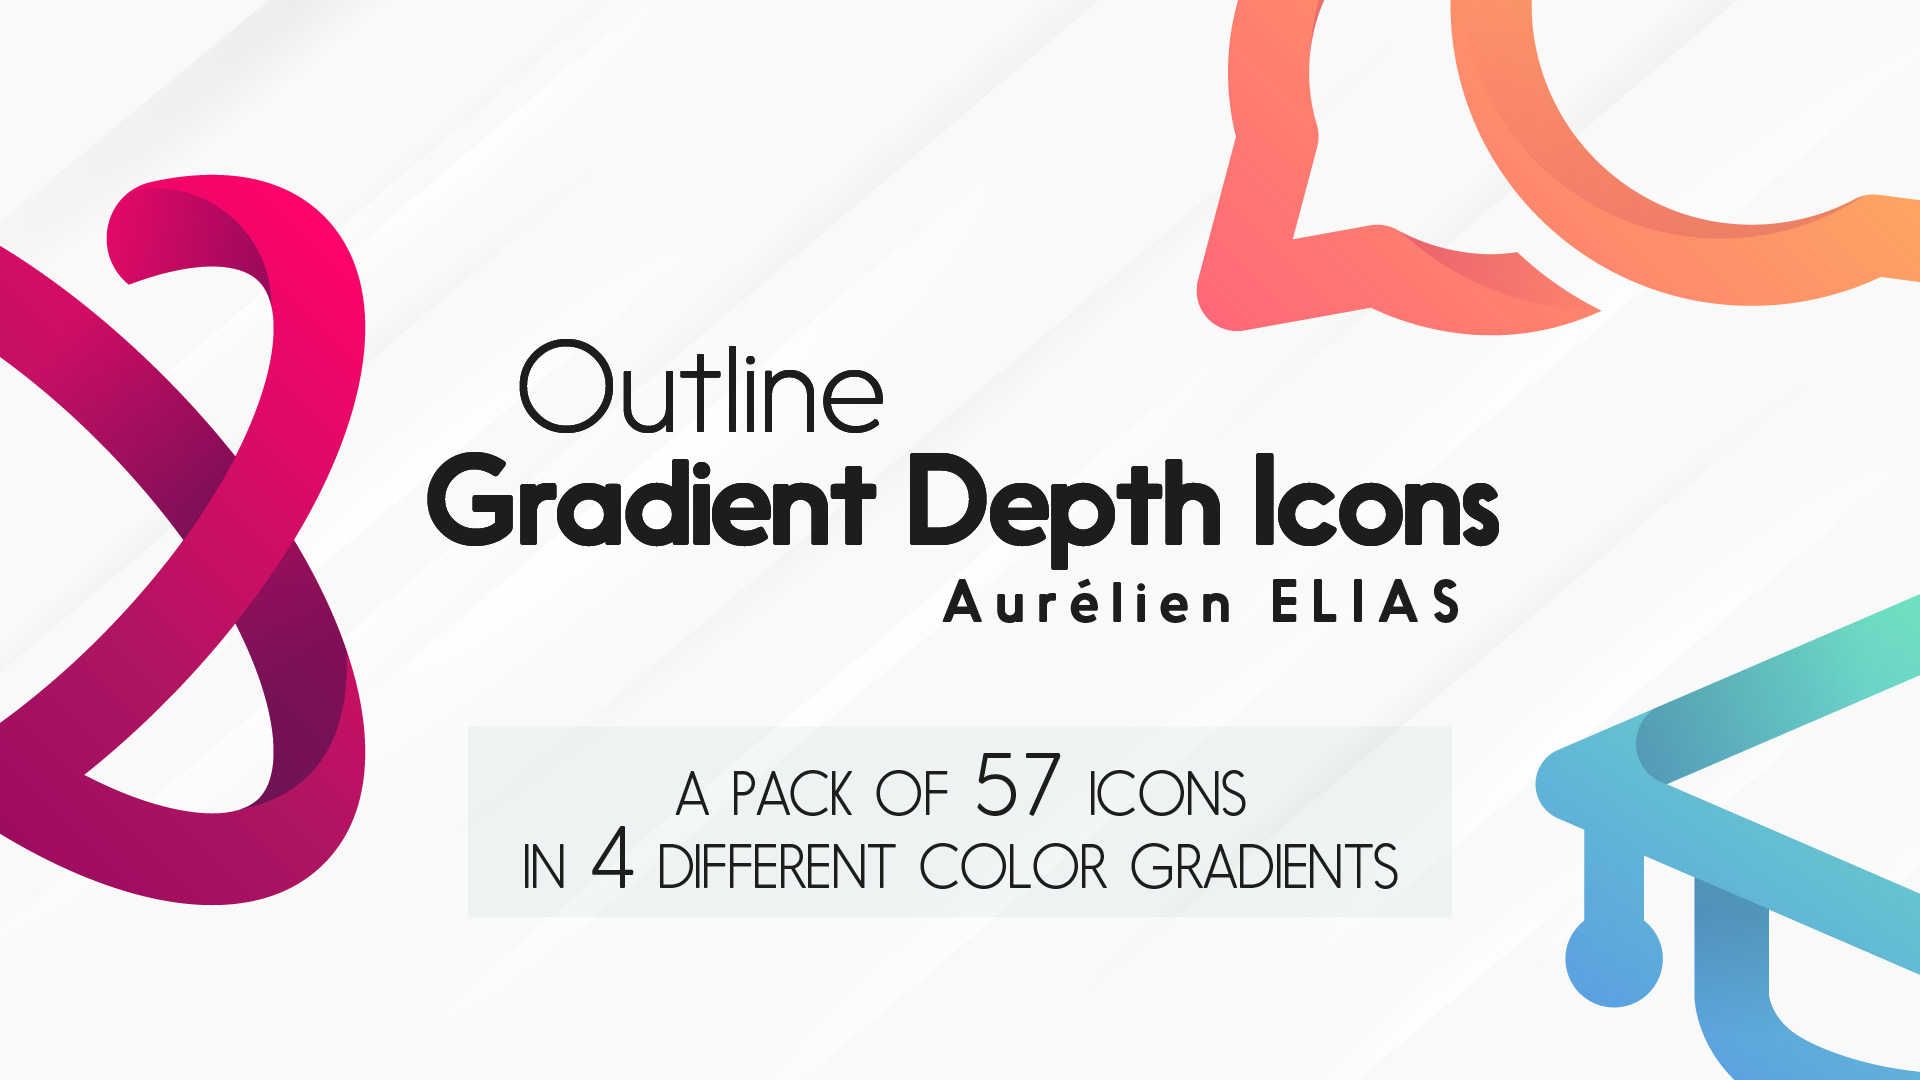 Outline Gradient Depth Icons Pack by Aurélien Elias